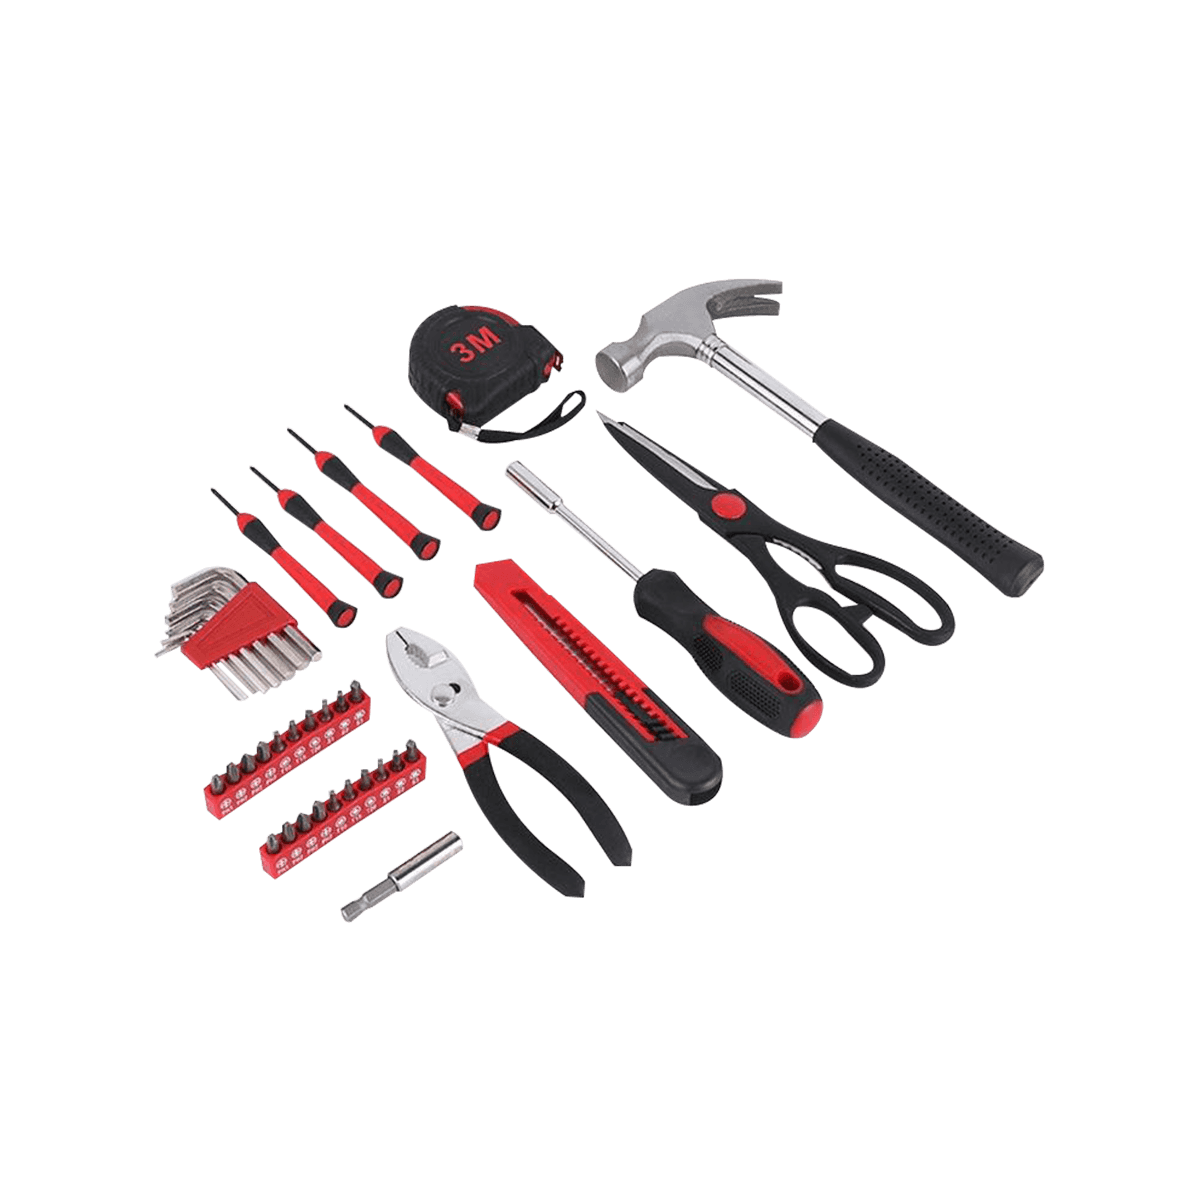 39 kappaleen työkalusarja kotikäyttöön tarkoitettujen käsityökalujen sarja, jossa on kannettava työkalulaatikon säilytystila